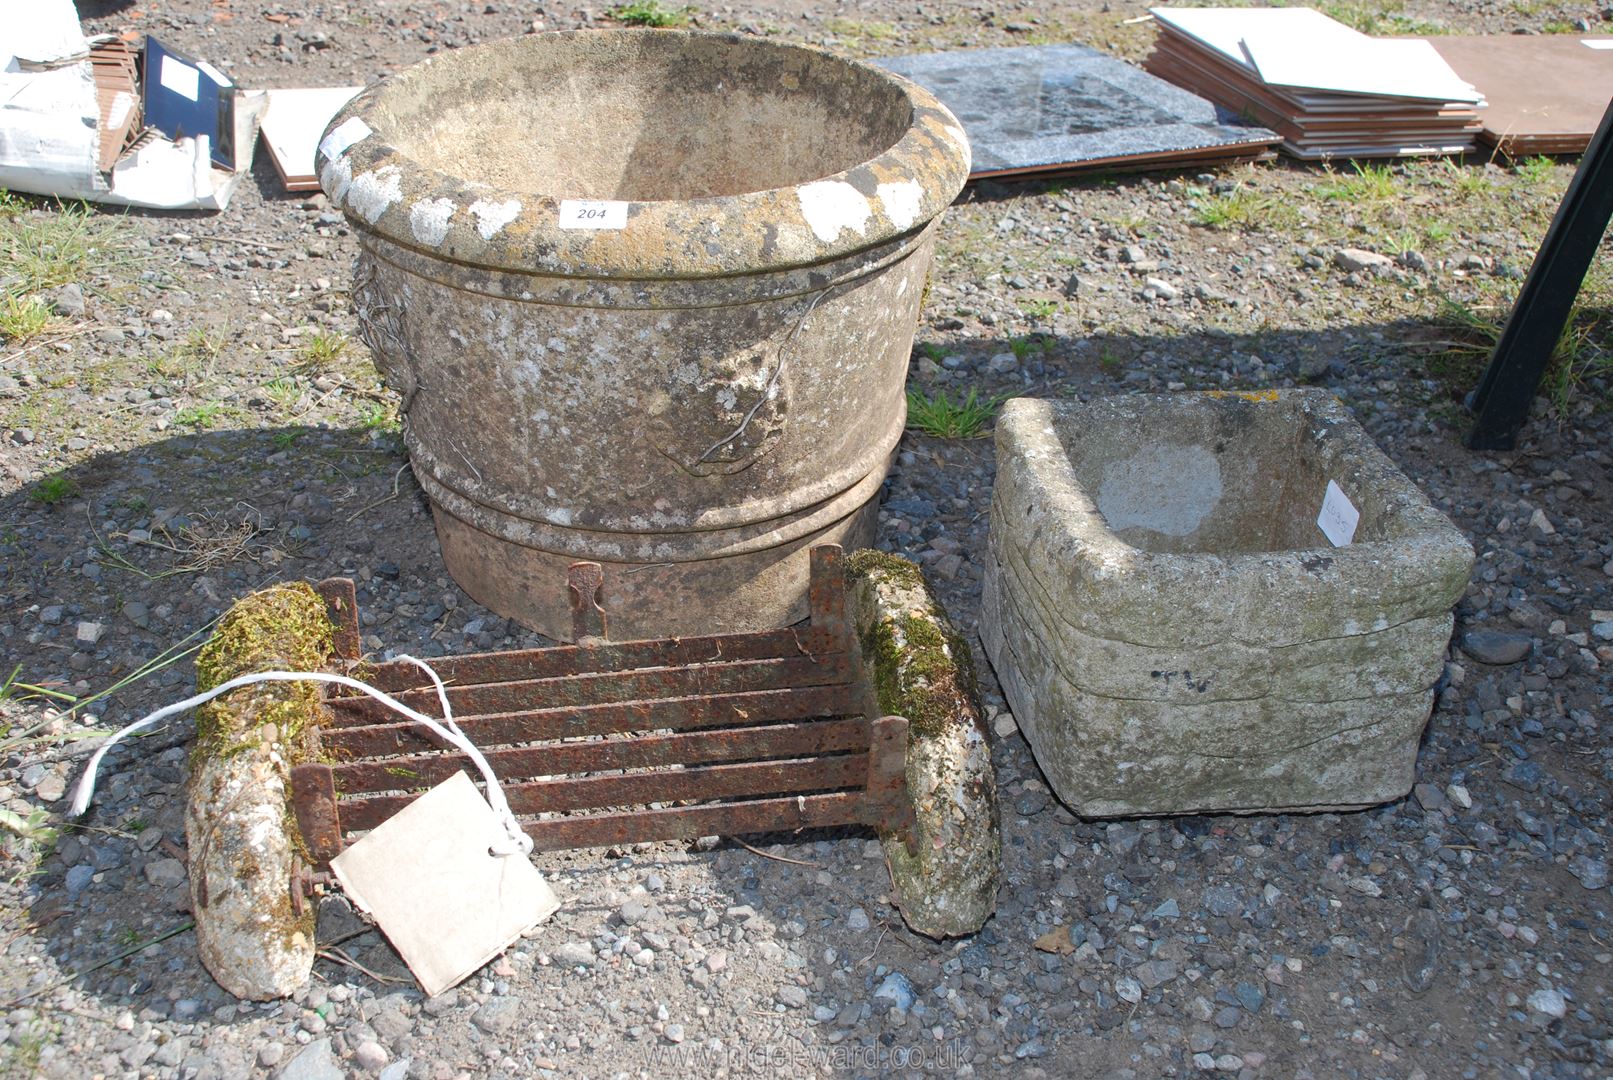 A round concrete planter, small square planter and a double boot scraper. - Image 2 of 2